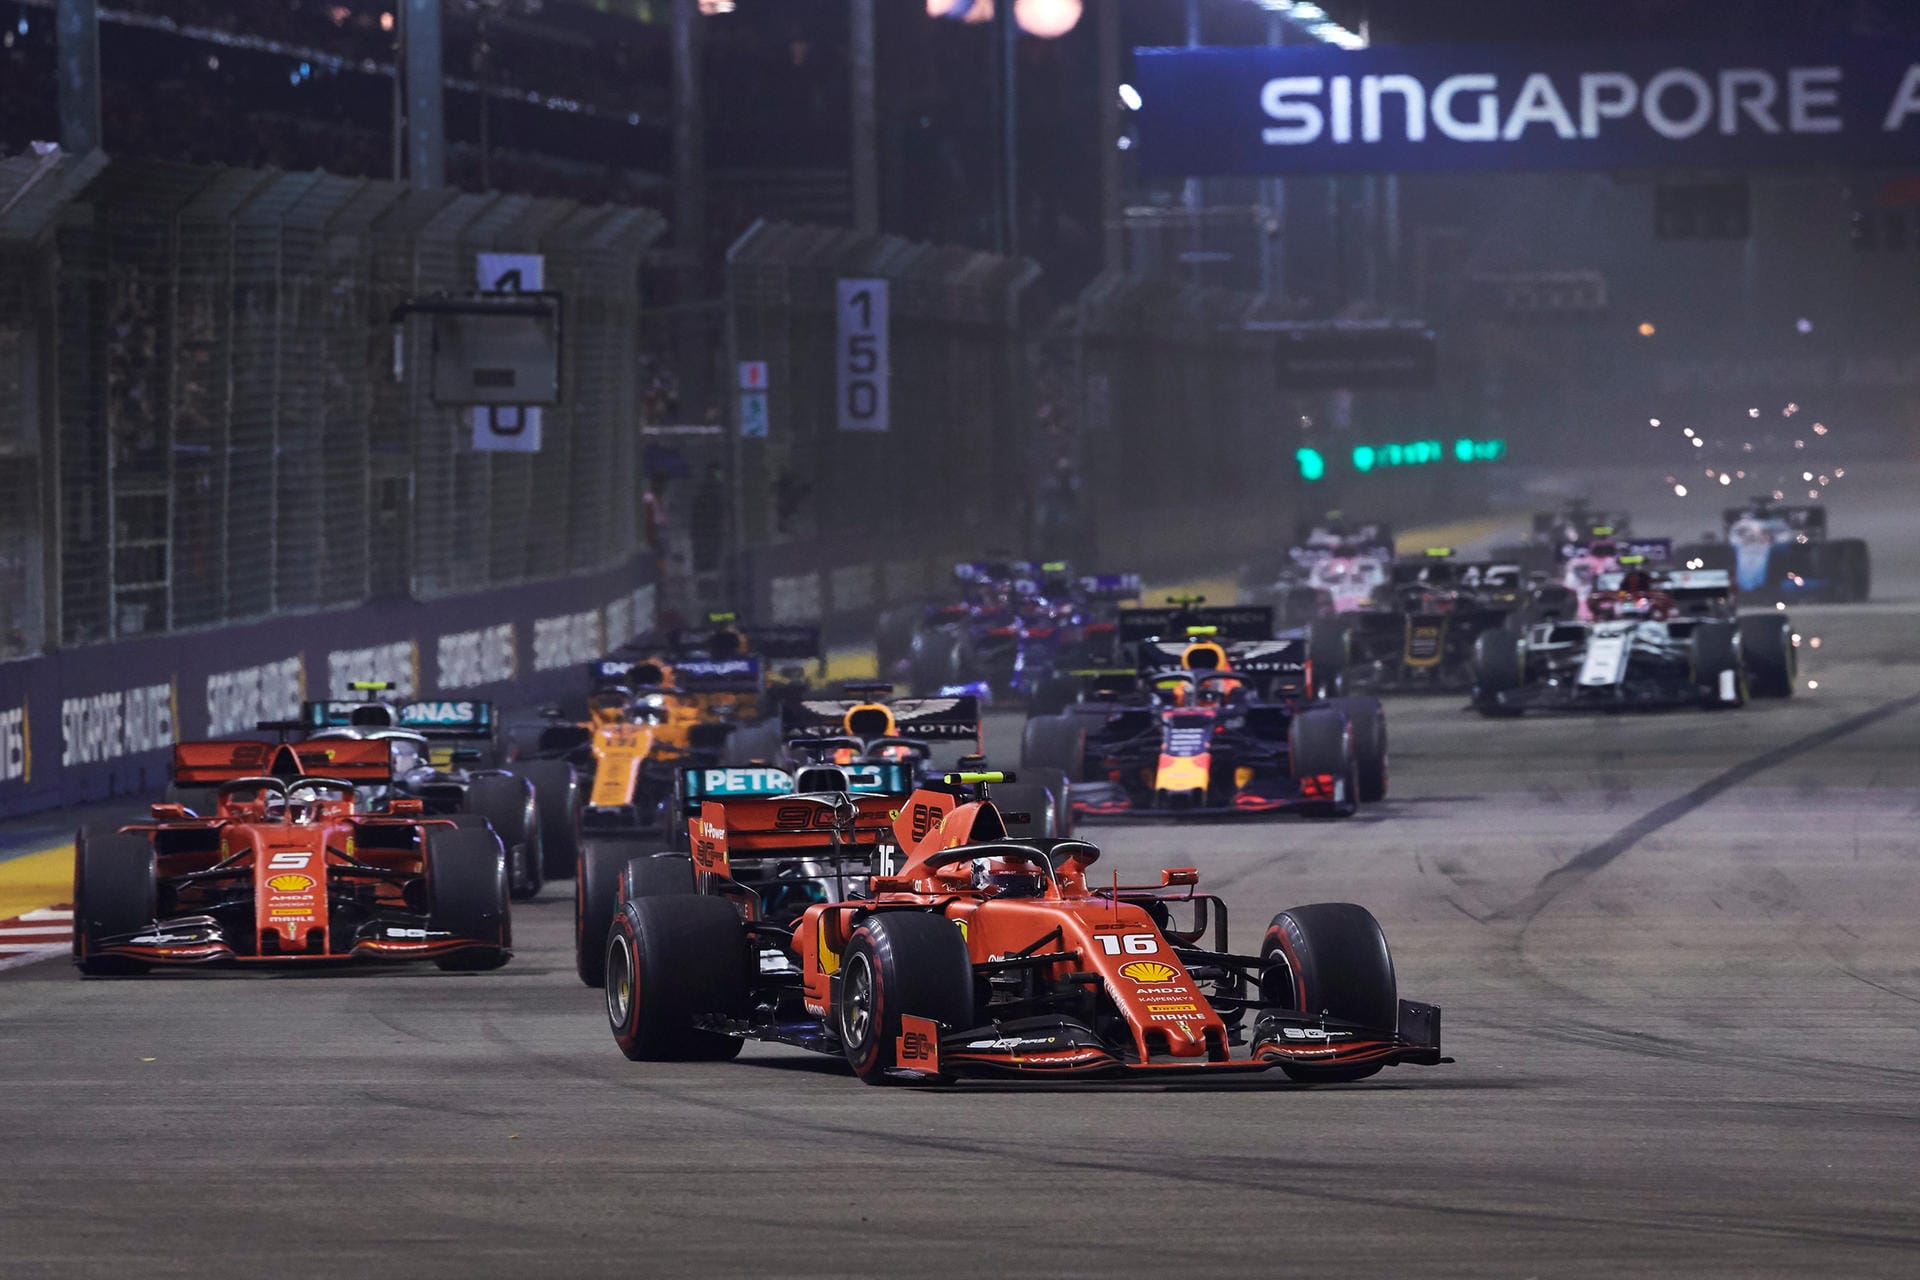 "La Vanguardia": "Der erste Saisonsieg von Sebastian Vettel beim Großen Preis von Singapur wird nicht für seine Heldenhaftigkeit oder Ähnliches in die Geschichte eingehen. Der Deutsche übersprang die logische Reihenfolge auf der Rennstrecke, als Charles Leclerc einen Reifenwechsel machte."